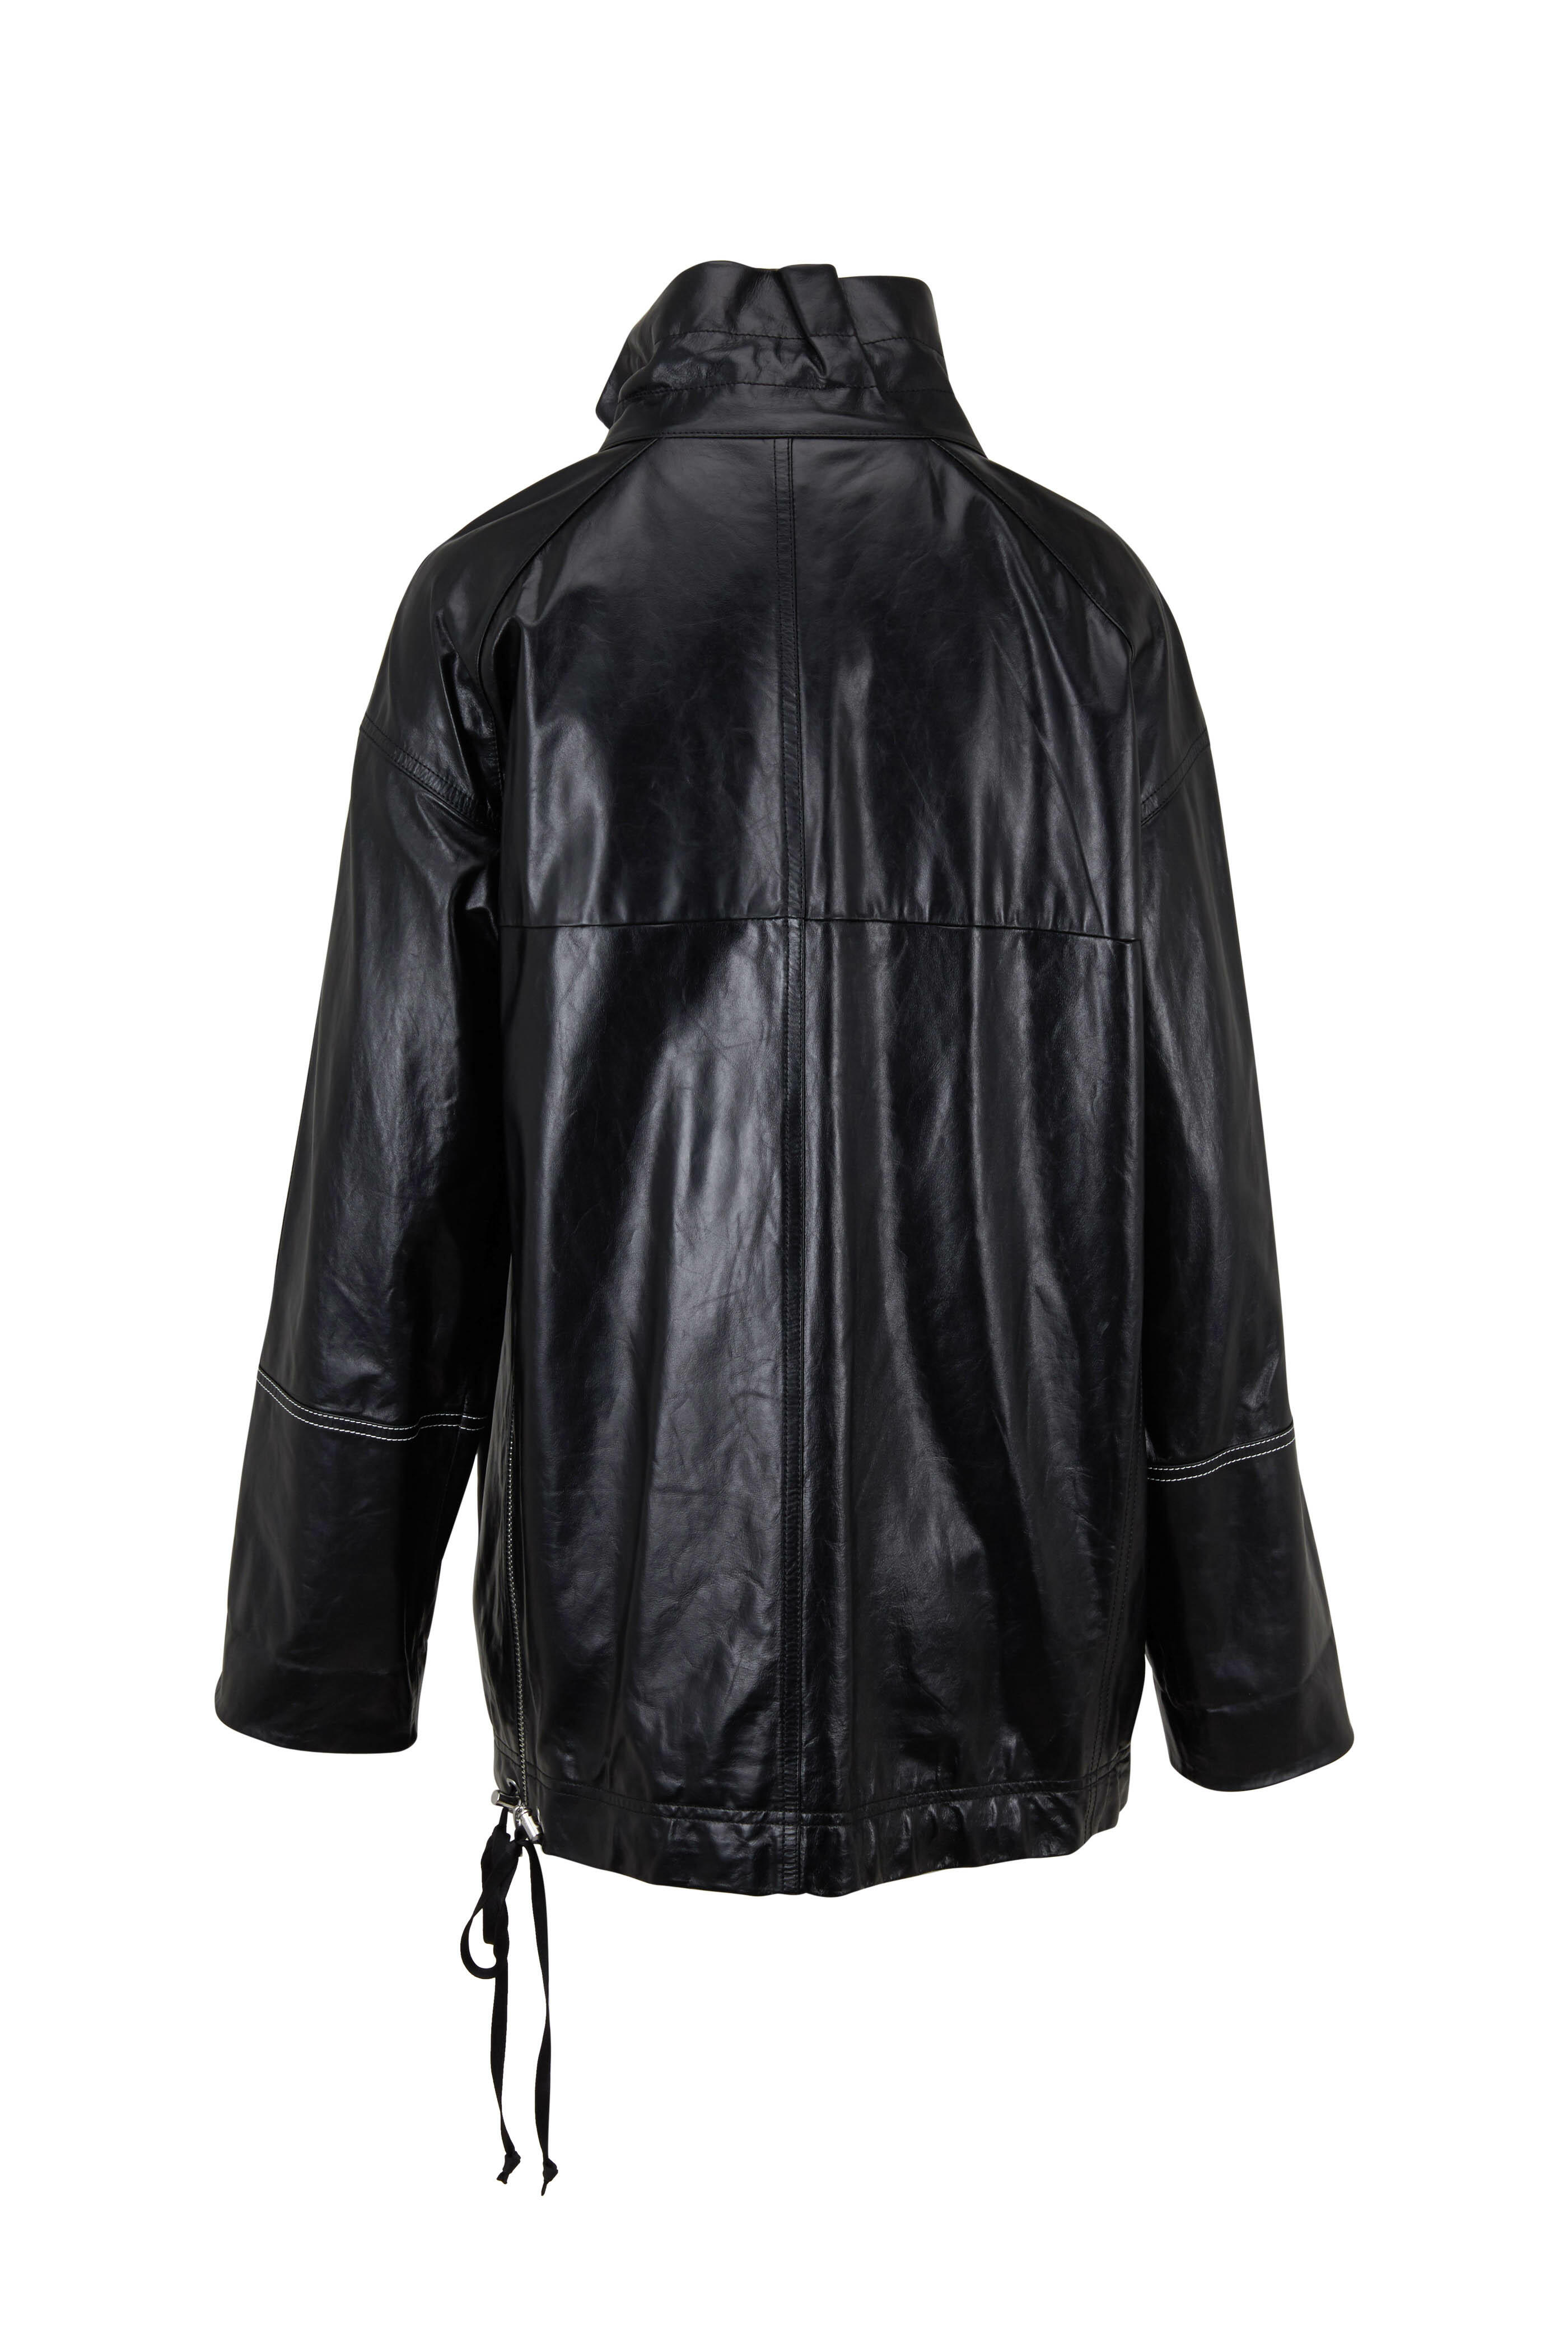 Helmut Lang - Black Glazed Leather Anorak Jacket